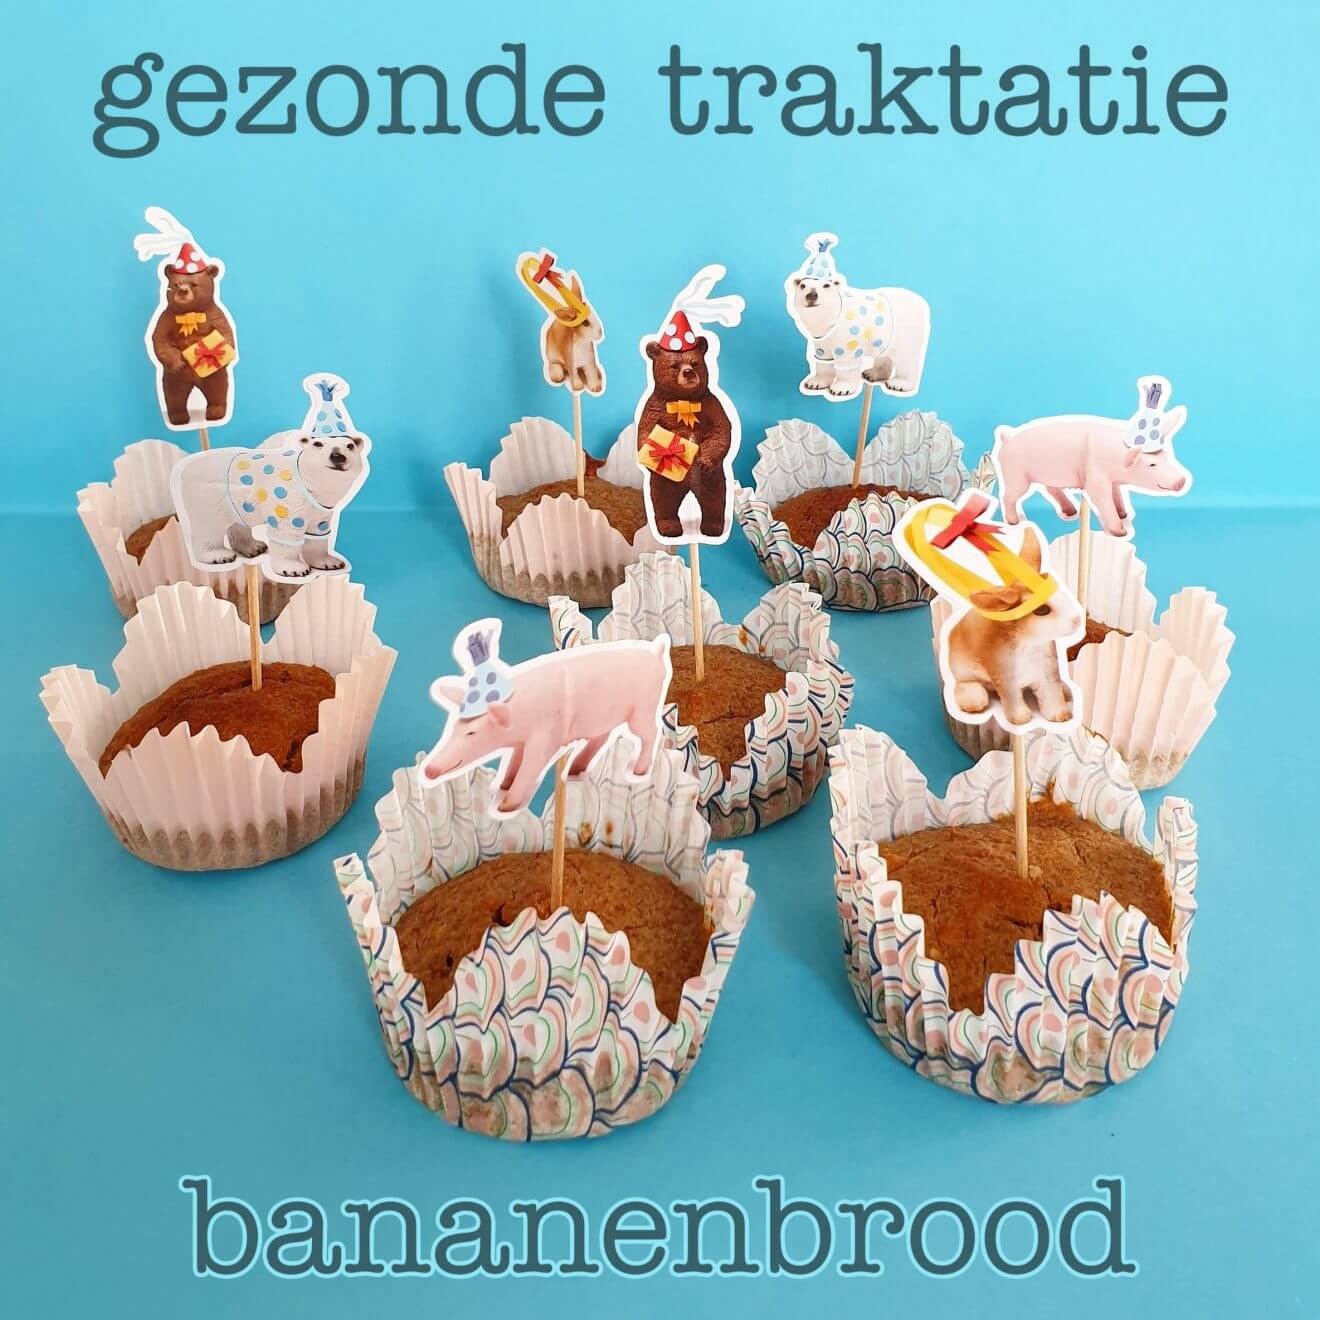 Gezonde traktatie: bananenbrood cupcakes